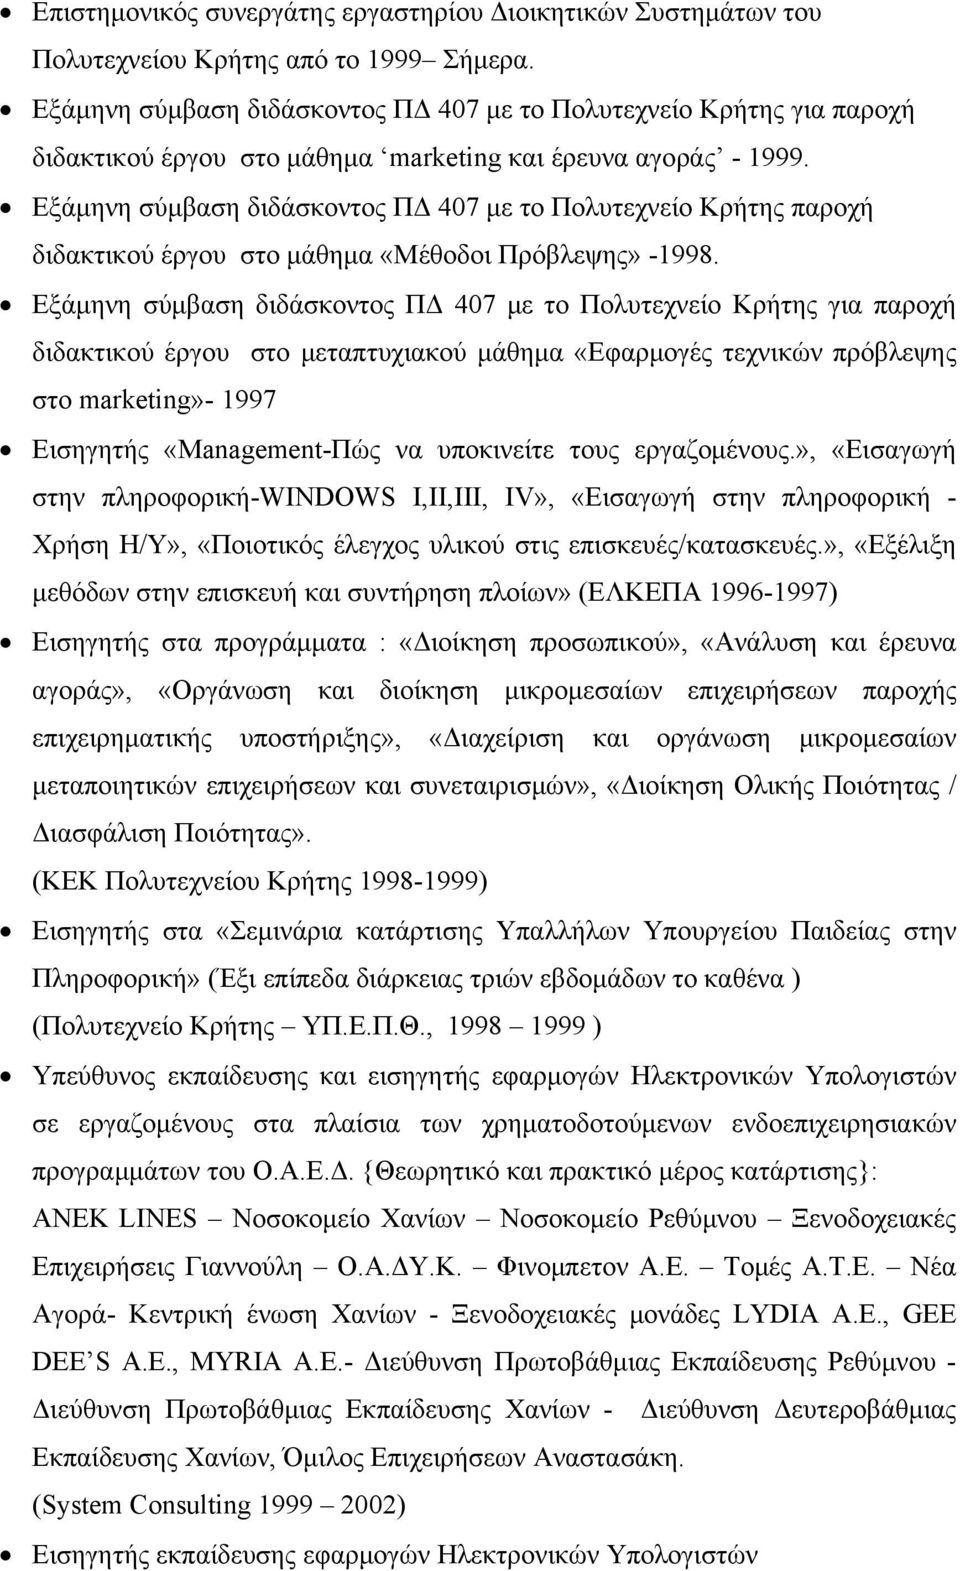 Εξάμηνη σύμβαση διδάσκοντος ΠΔ 407 με το Πολυτεχνείο Κρήτης παροχή διδακτικού έργου στο μάθημα «Μέθοδοι Πρόβλεψης» -1998.